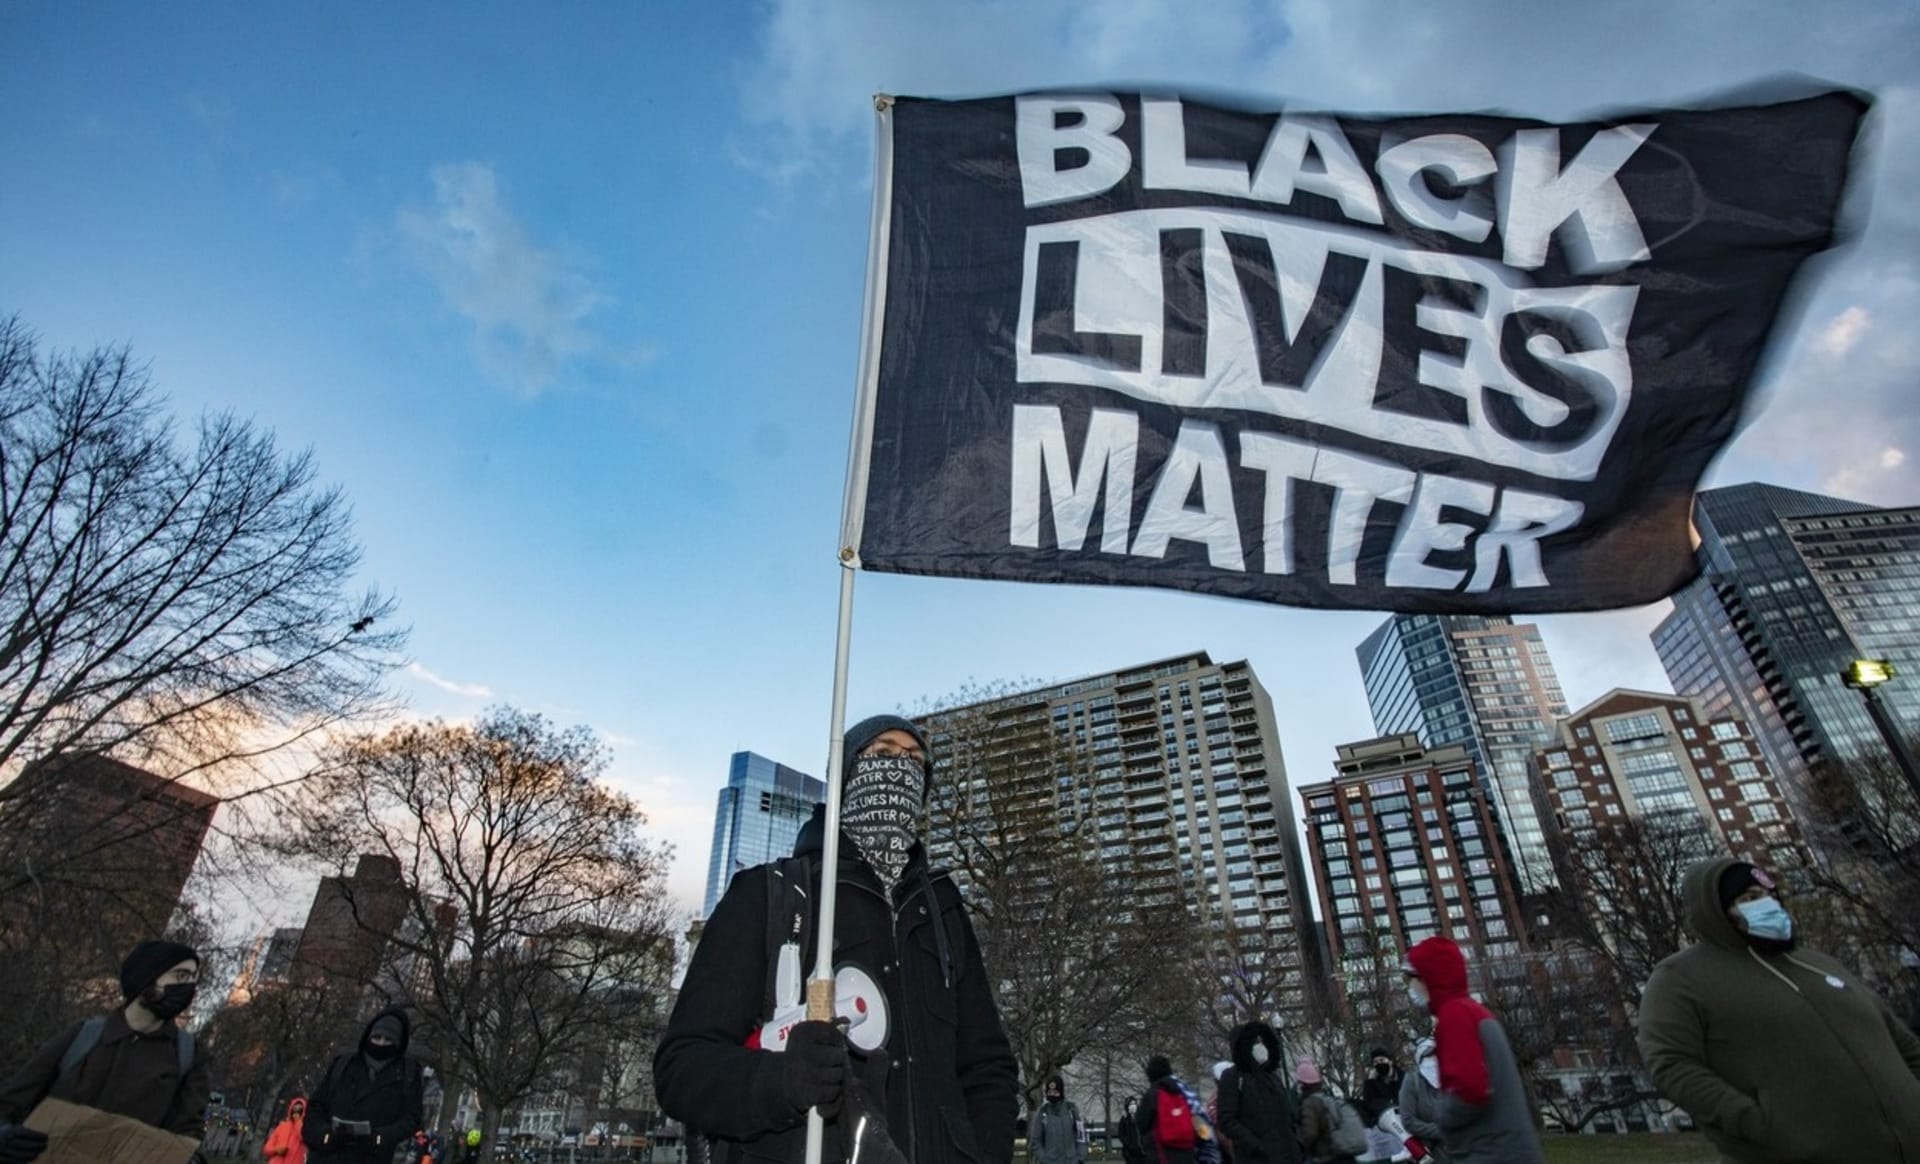 Hnutí Black Lives Matter dostalo od norského poslance Pettera Eideho nominaci na Nobelovu cenu za mír.